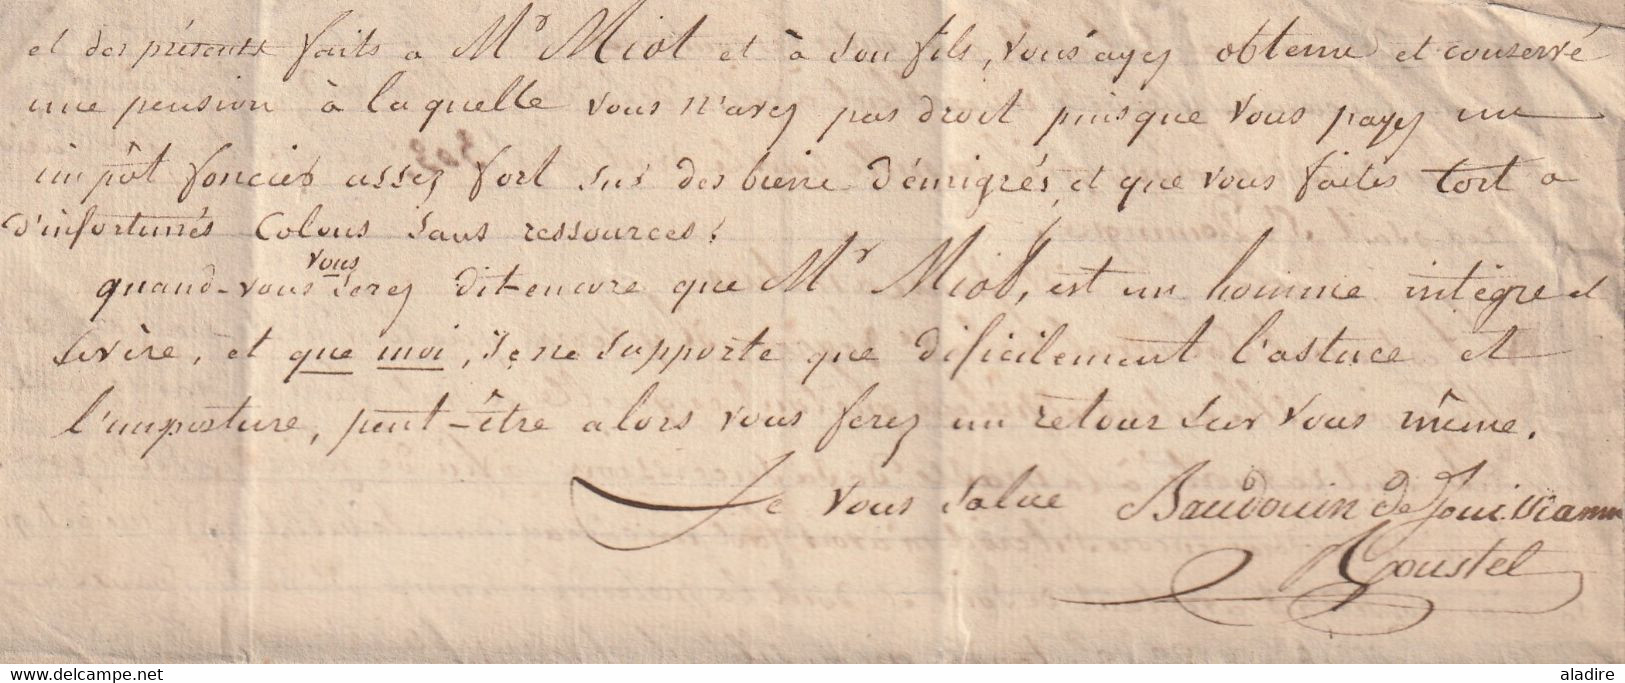 1830 - Lettre pliée avec corresp de 4 pages de Saint Denis près Paris vers Bagnères, Hautes Pyrénées - taxe 10